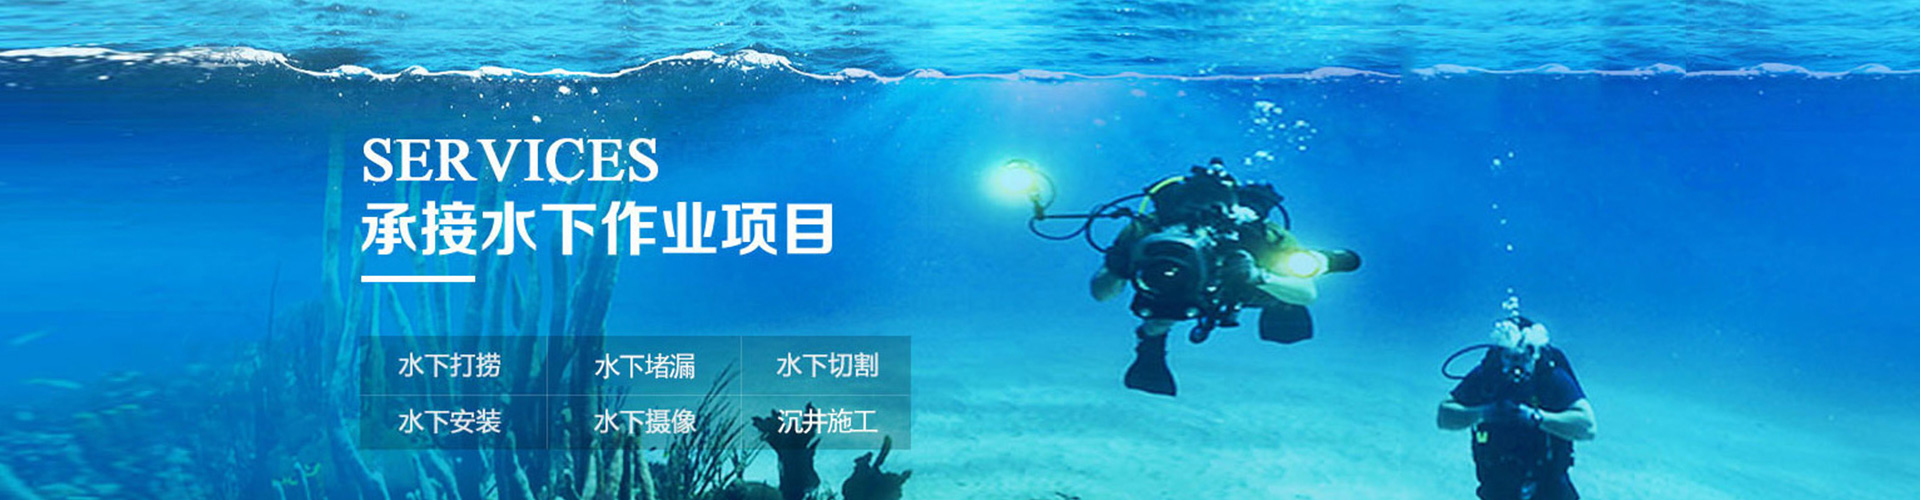 水下机器人、咸宁本地水下机器人、咸宁、咸宁水下机器人